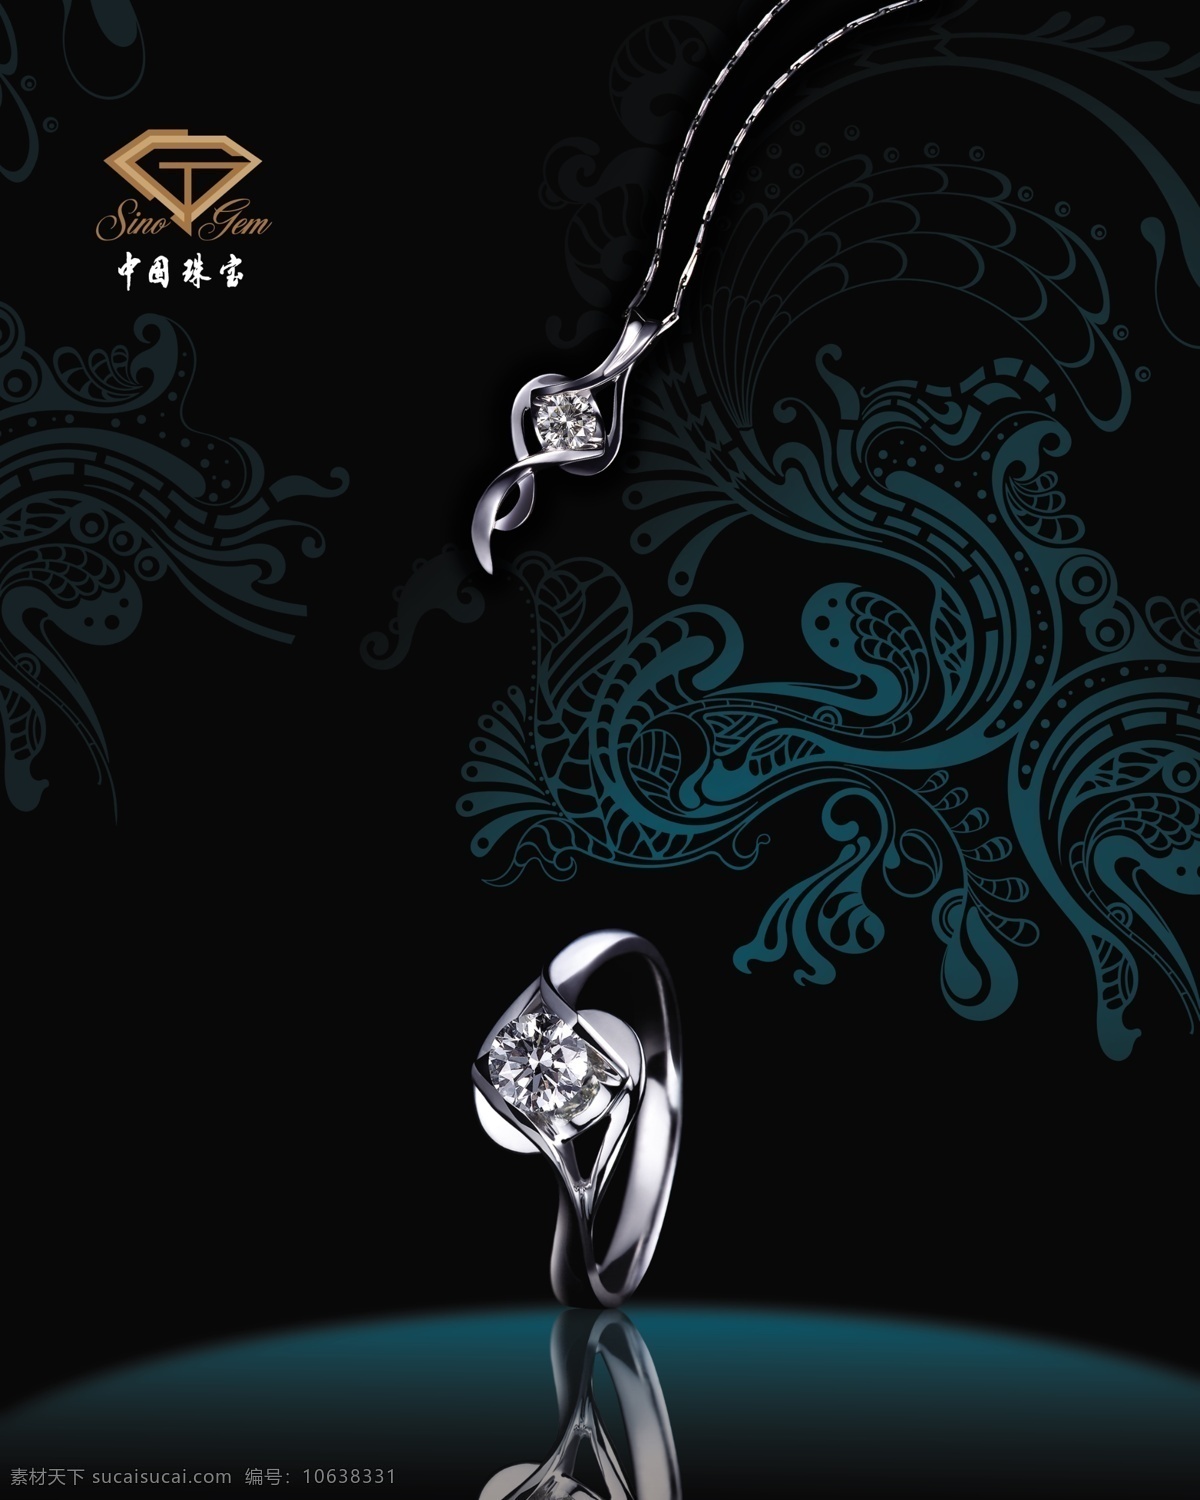 中国珠宝 p10钻石 钻石 灯片 黑色 花纹 广告设计模板 源文件